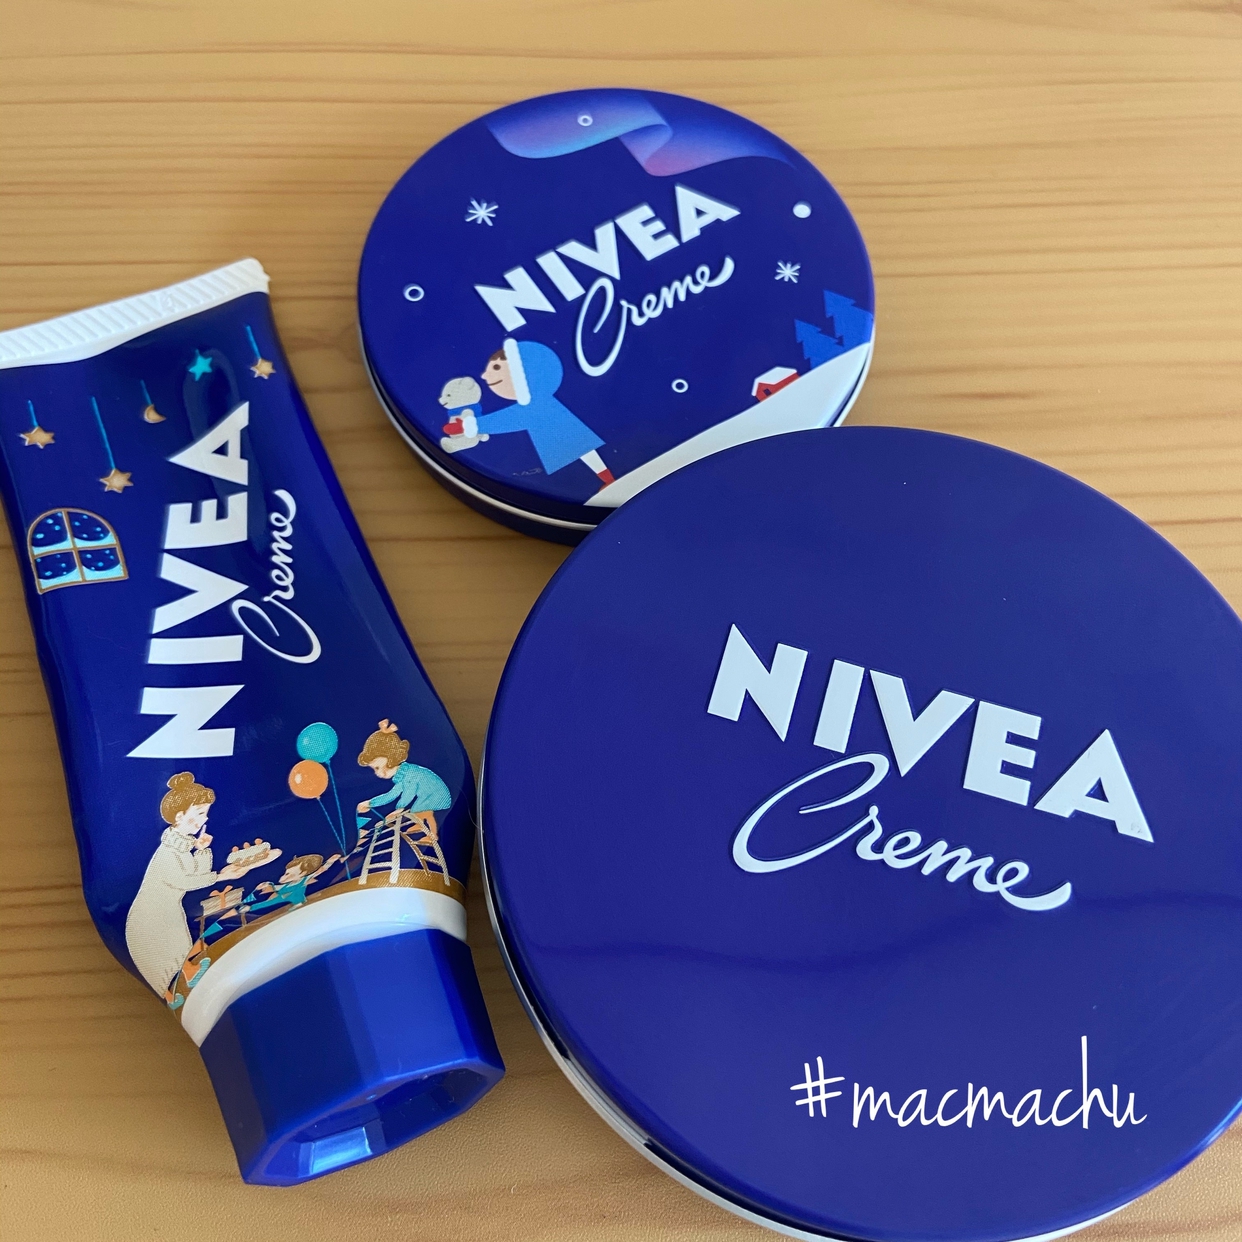 NIVEA(ニベア) クリーム(大缶)を使ったmachuさんのクチコミ画像1